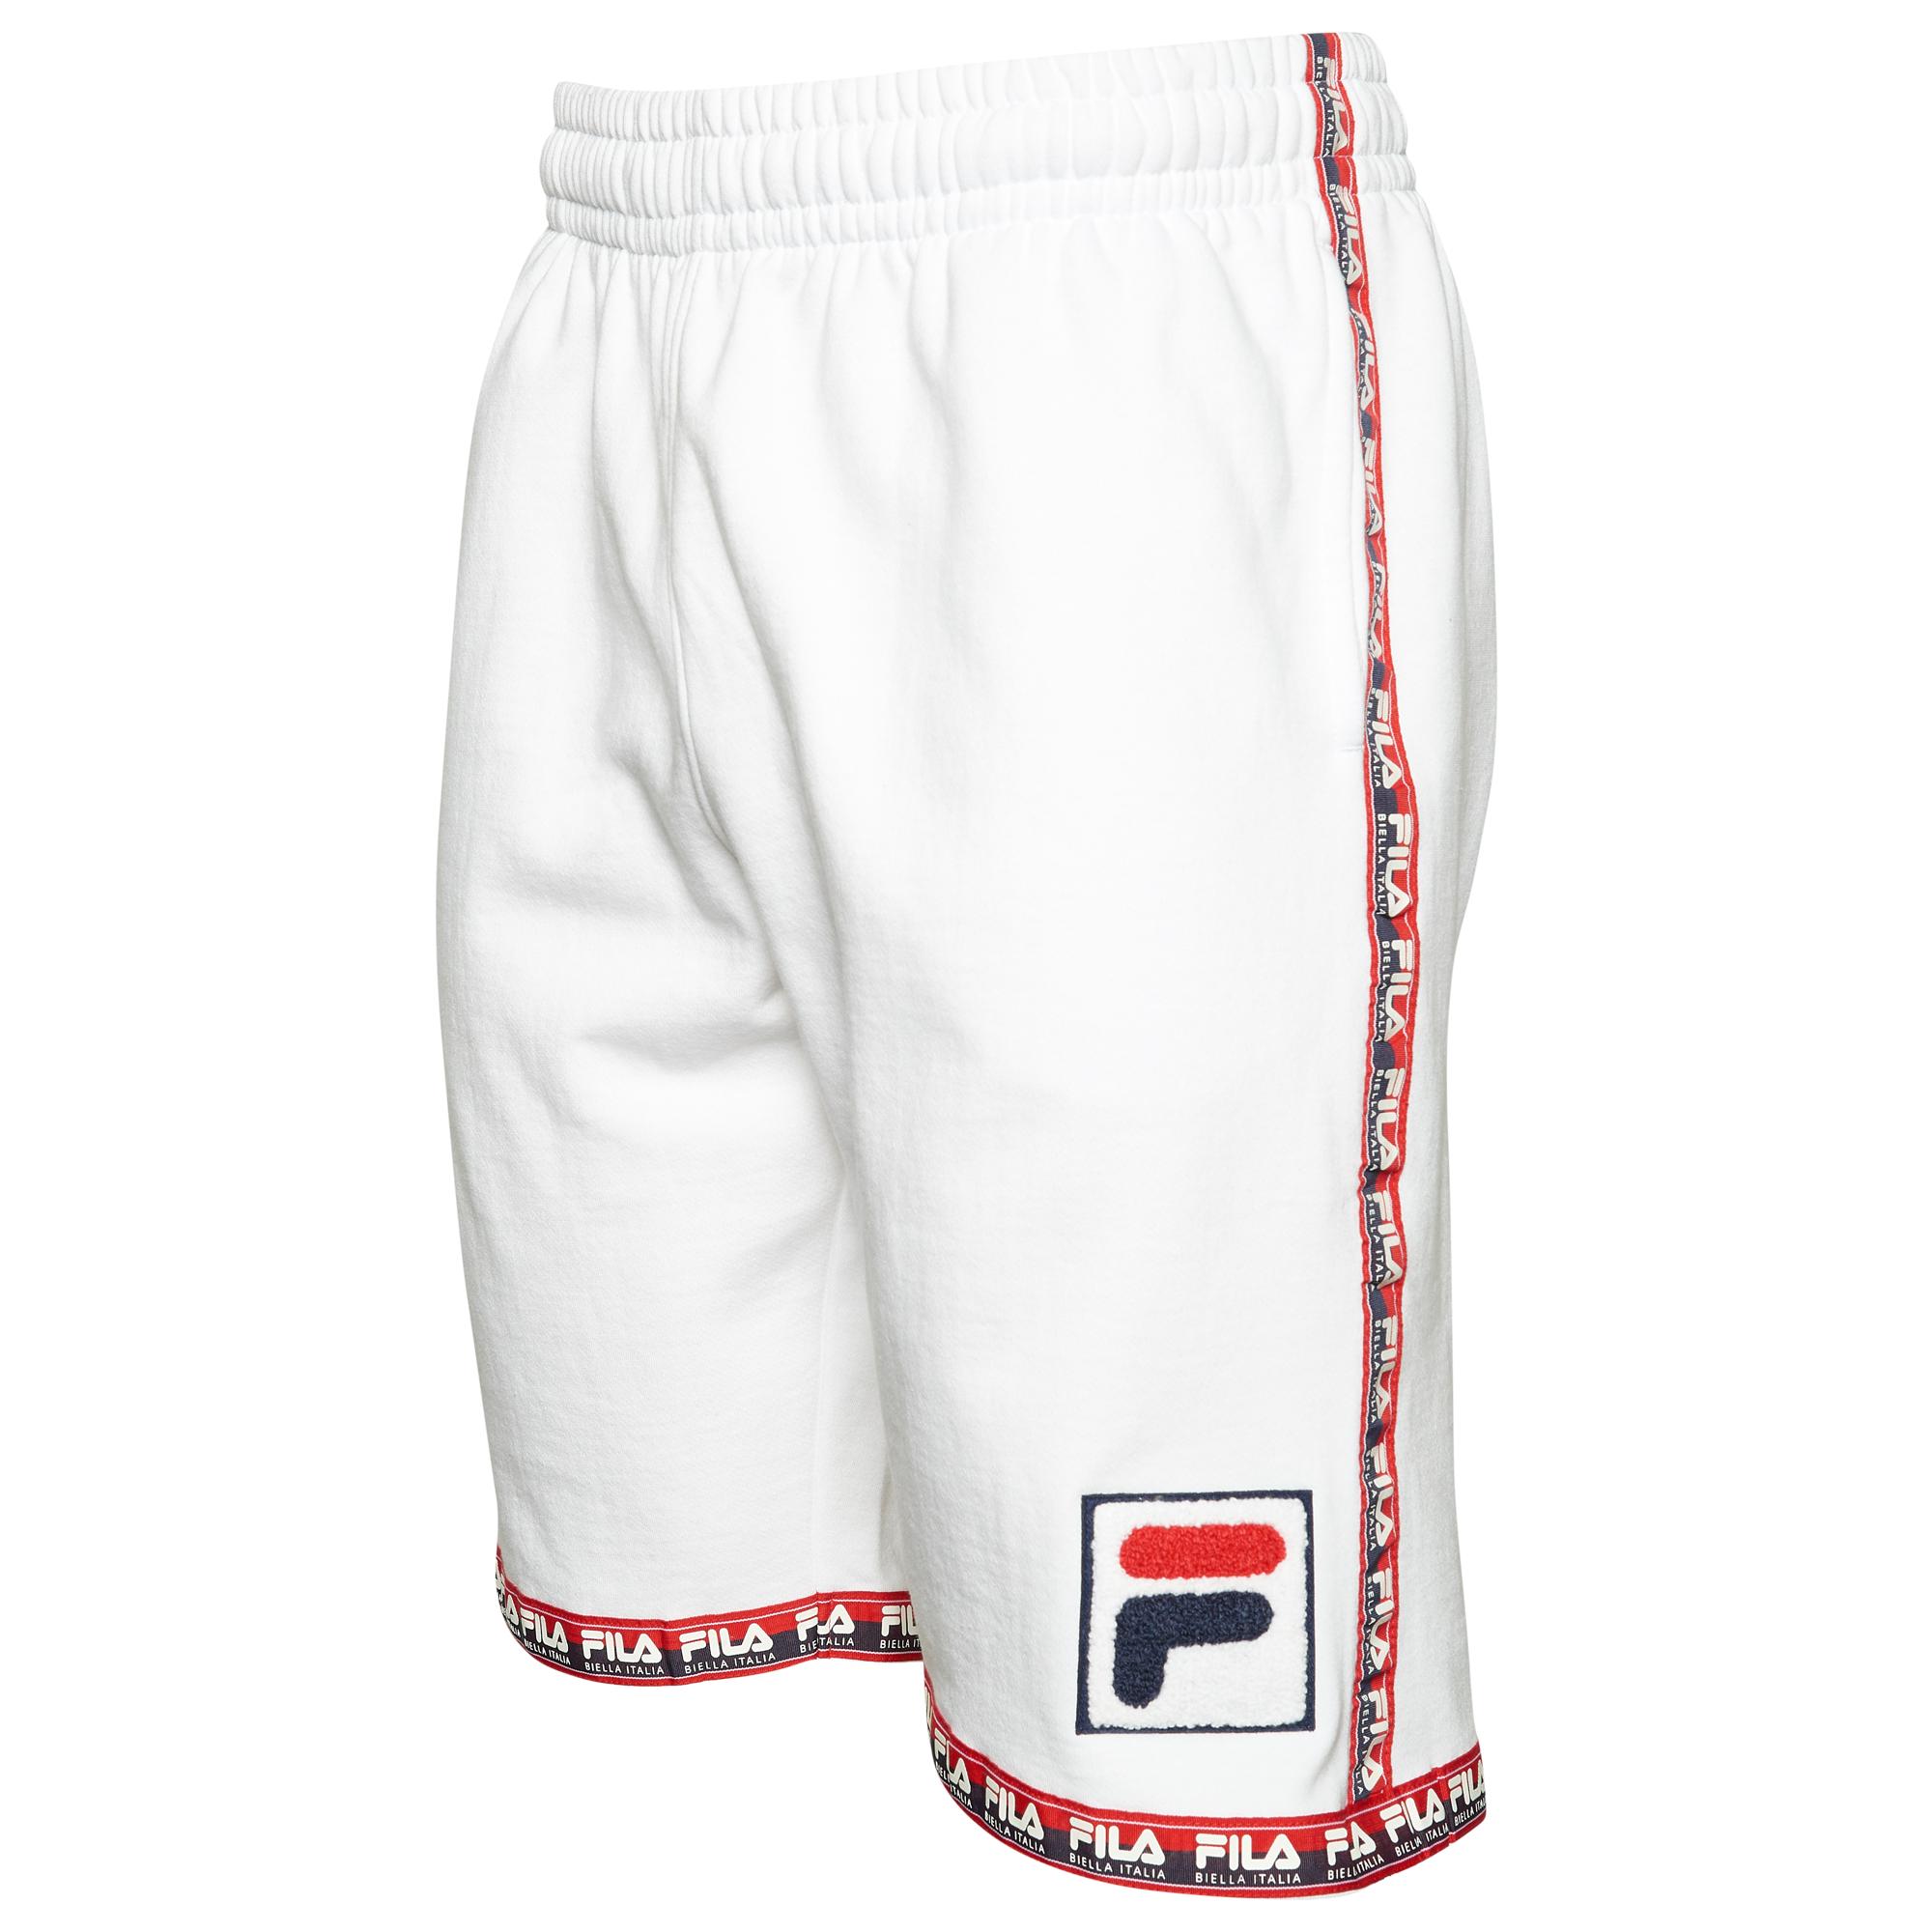 Fila Biella Italia Fleece Shorts in 